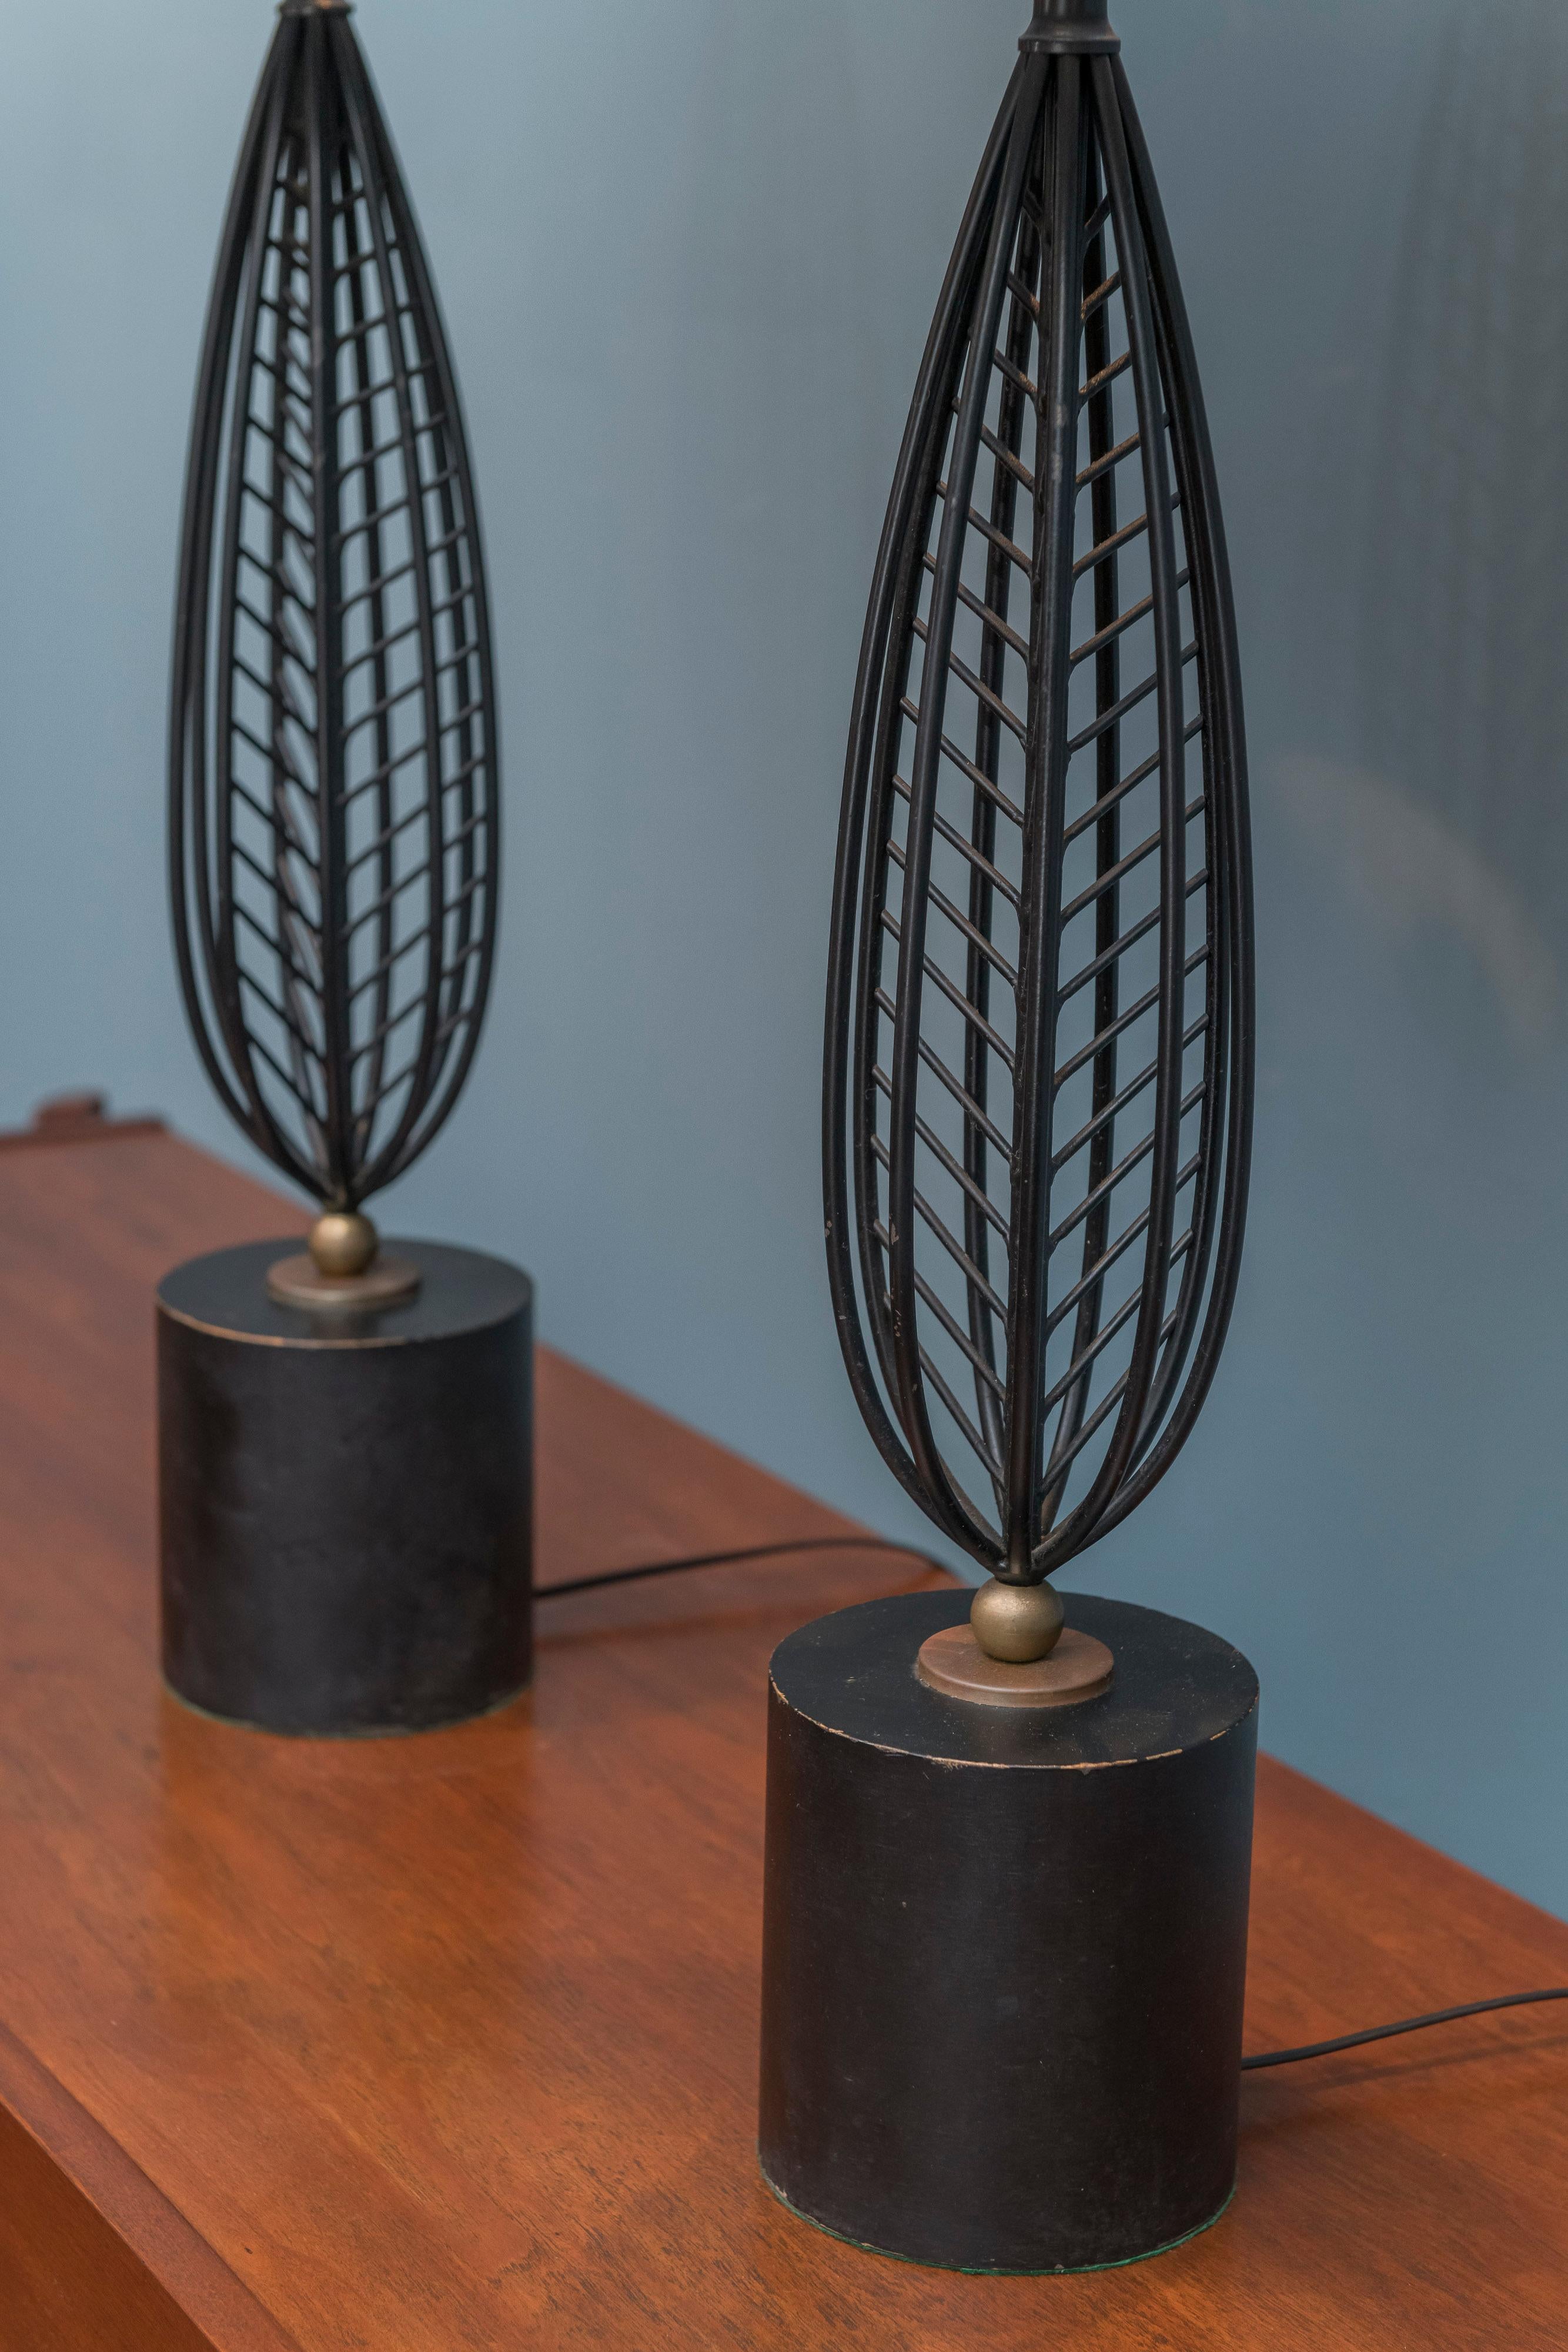 Lampes de table modernes du milieu du siècle en acier noir peint avec des accents dorés sur des bases en bois. Nouveau câblage et restauration. Hauteur jusqu'à la douille 27